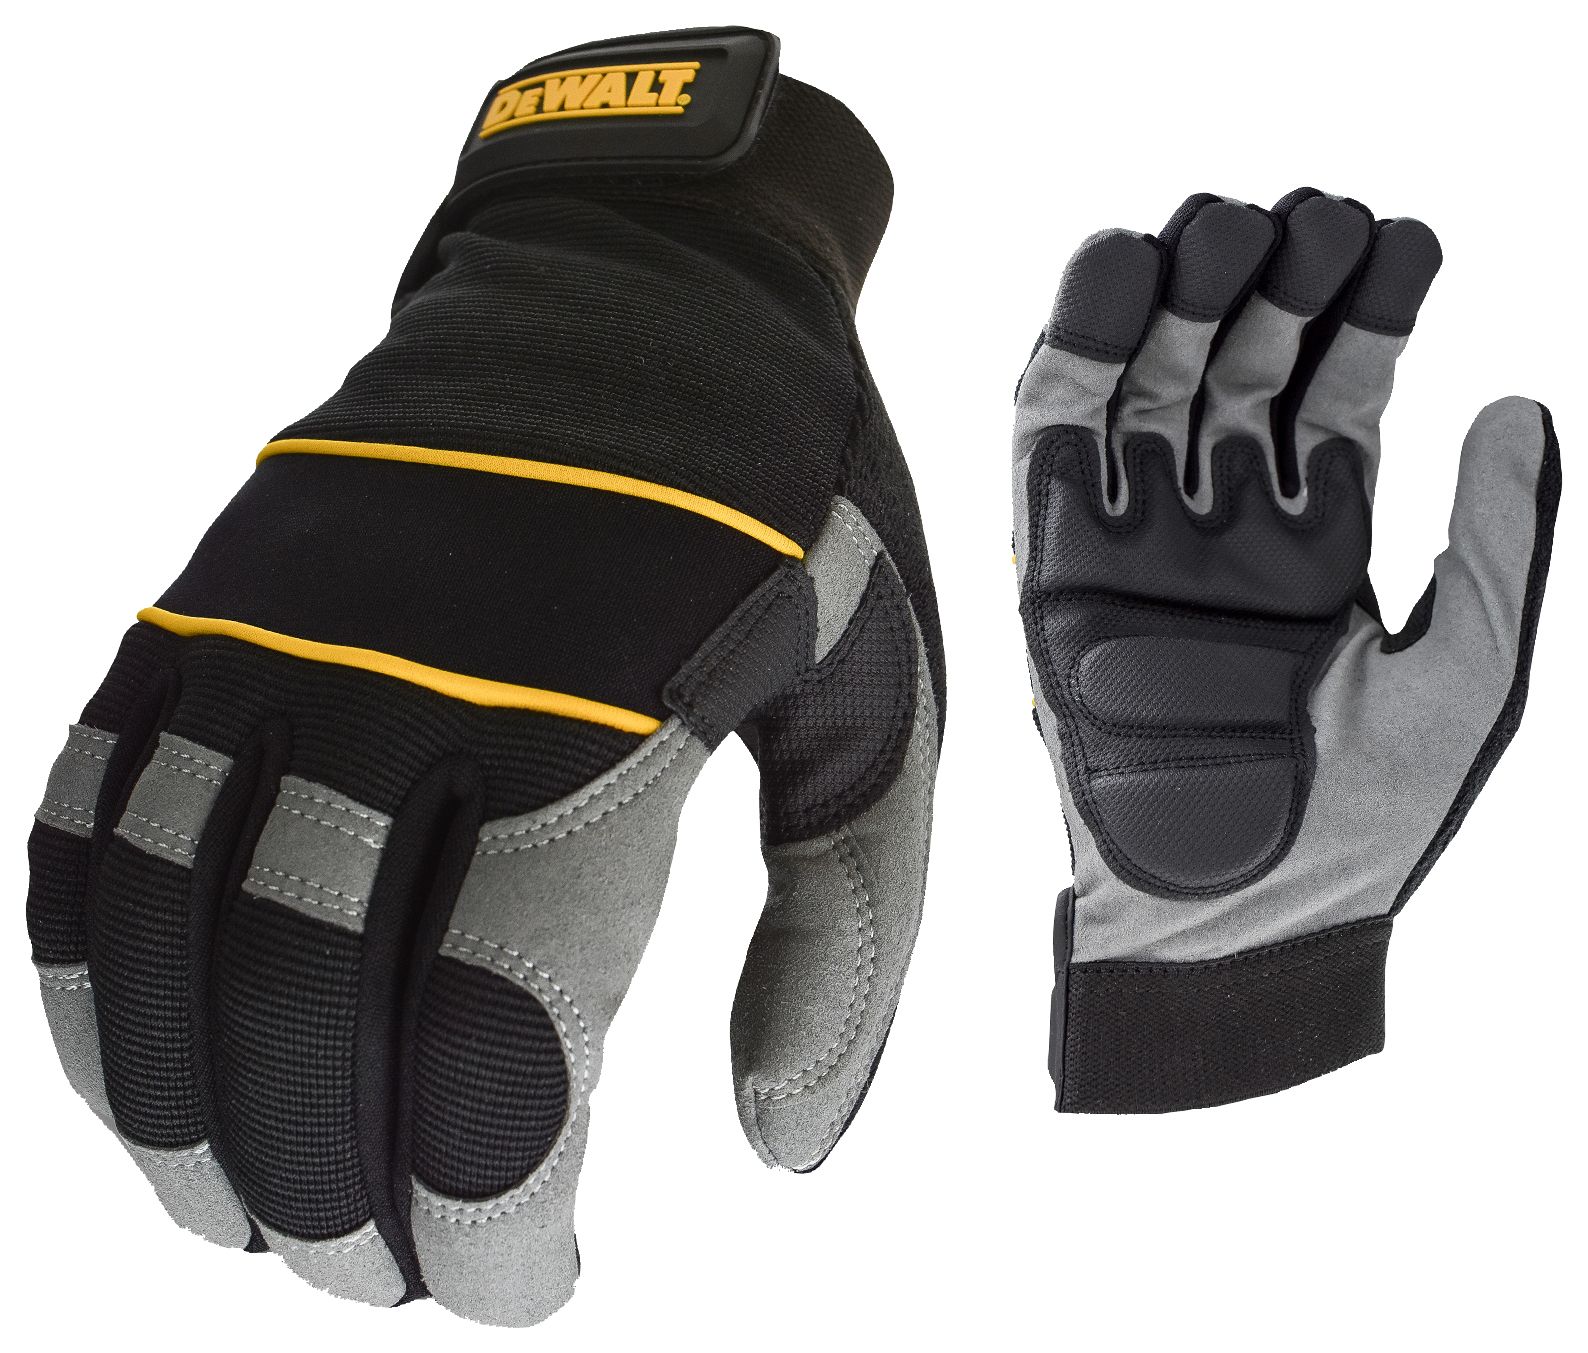 DEWALT DPG33L Power Tool Performance Glove Black - Size L